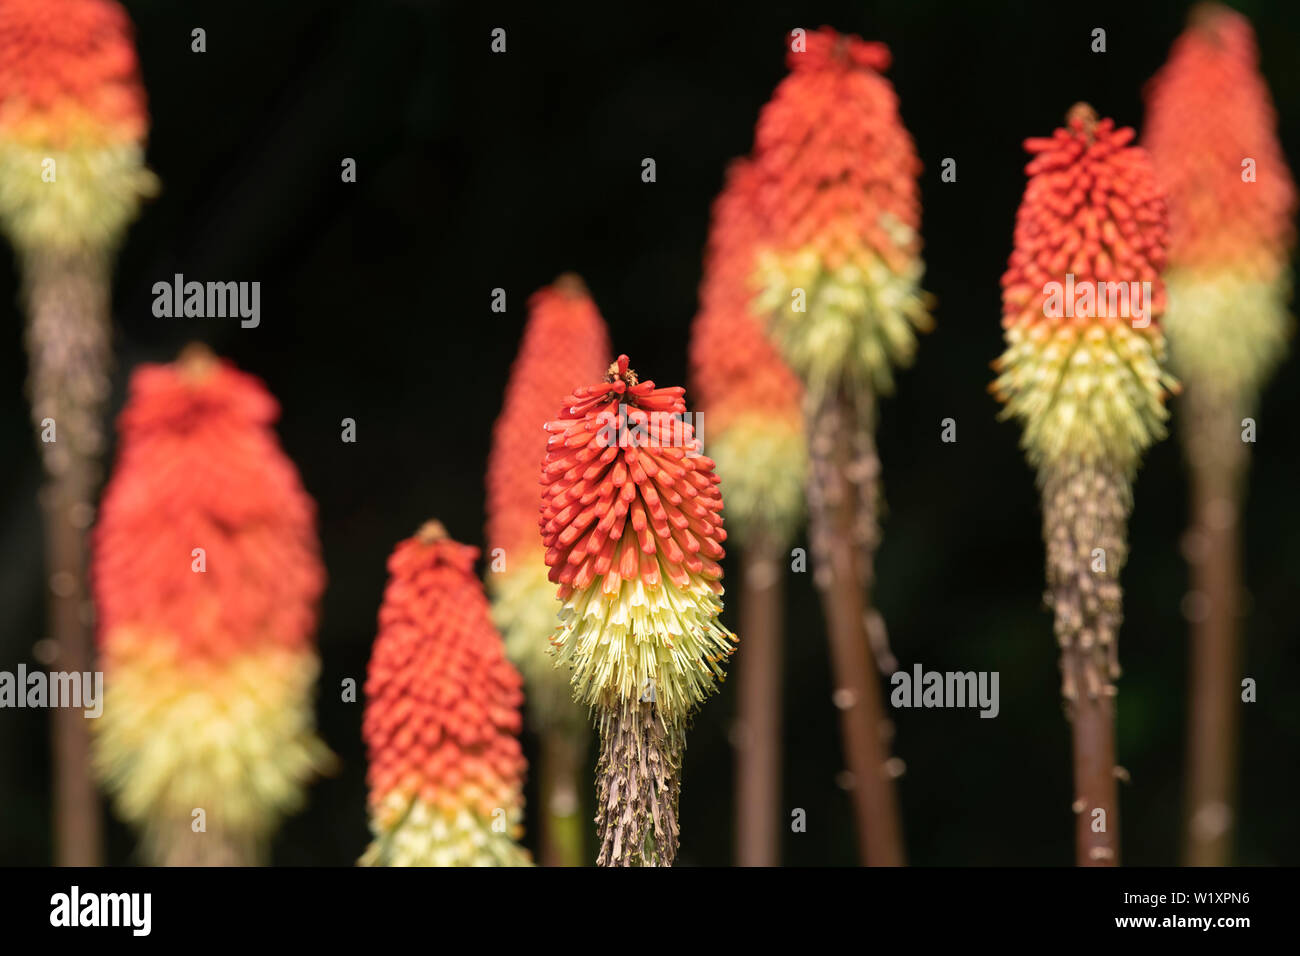 Red-Hot Poker (kniphofia) Blumen (auch bekannt als Fackel Lilien oder Tritoma) gegen einen dunklen Hintergrund Stockfoto